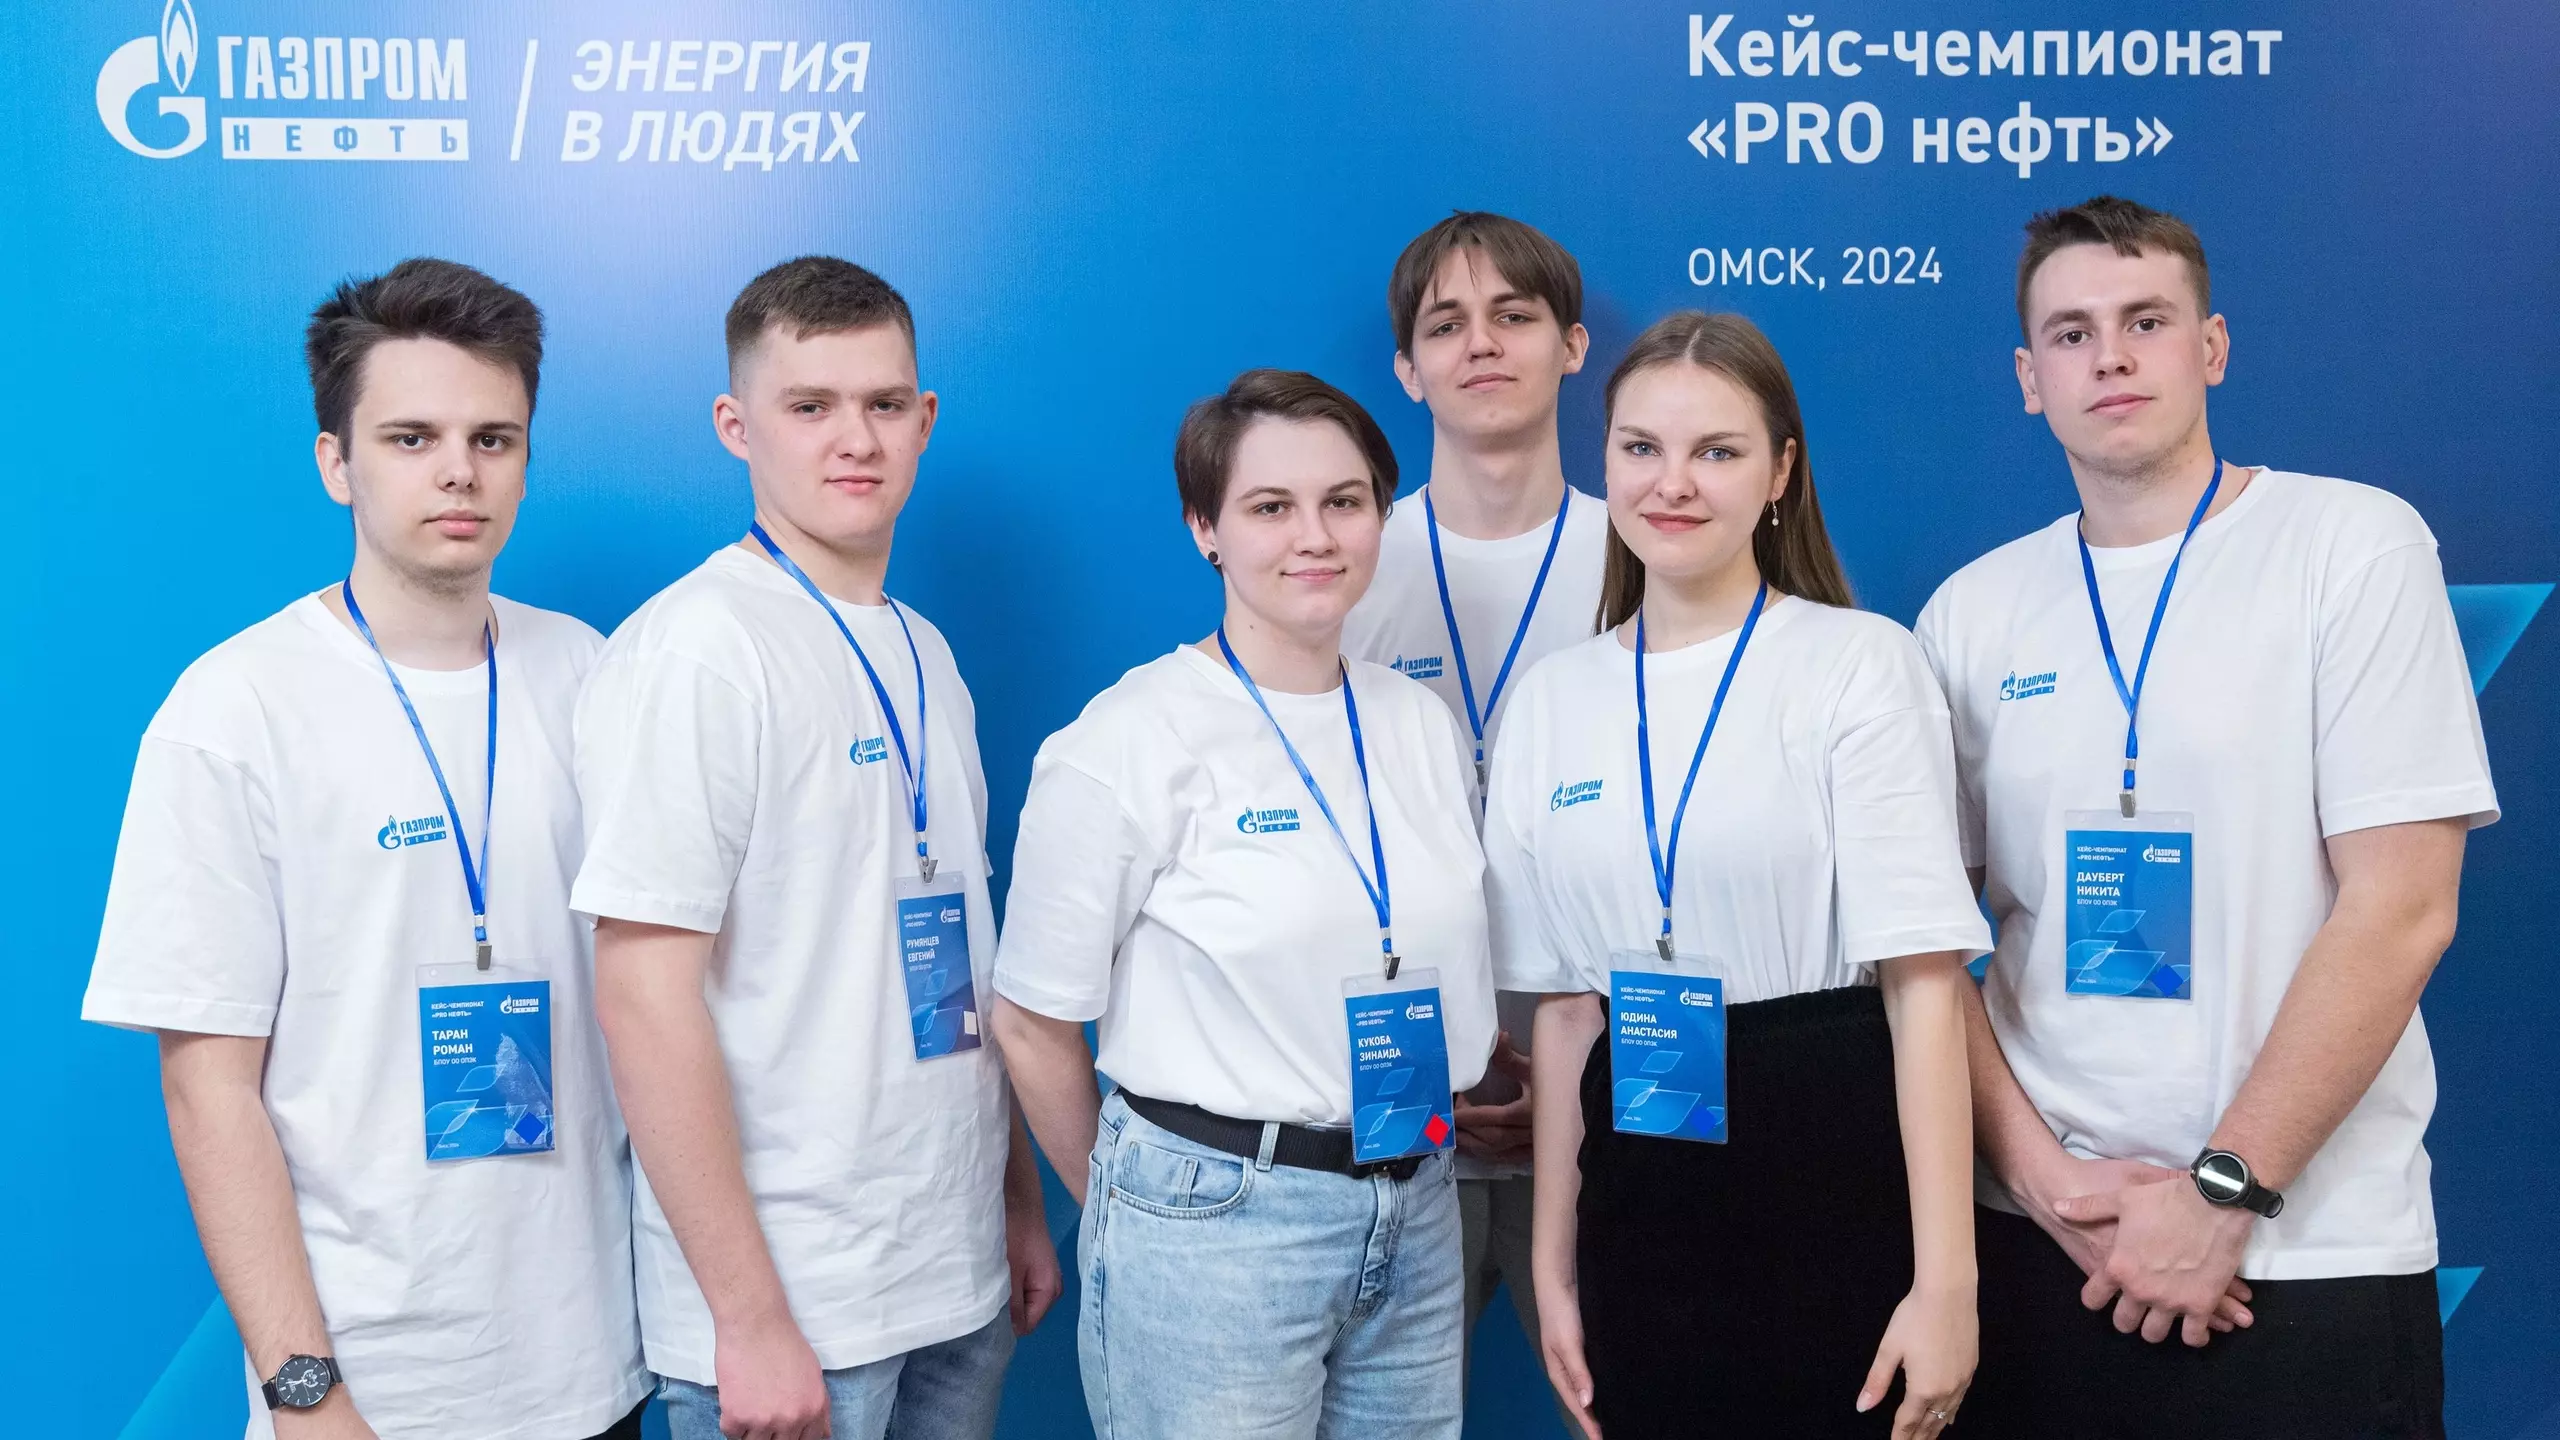 Омский НПЗ организовал первый кейс-чемпионат «PRO нефть» для студентов колледжей